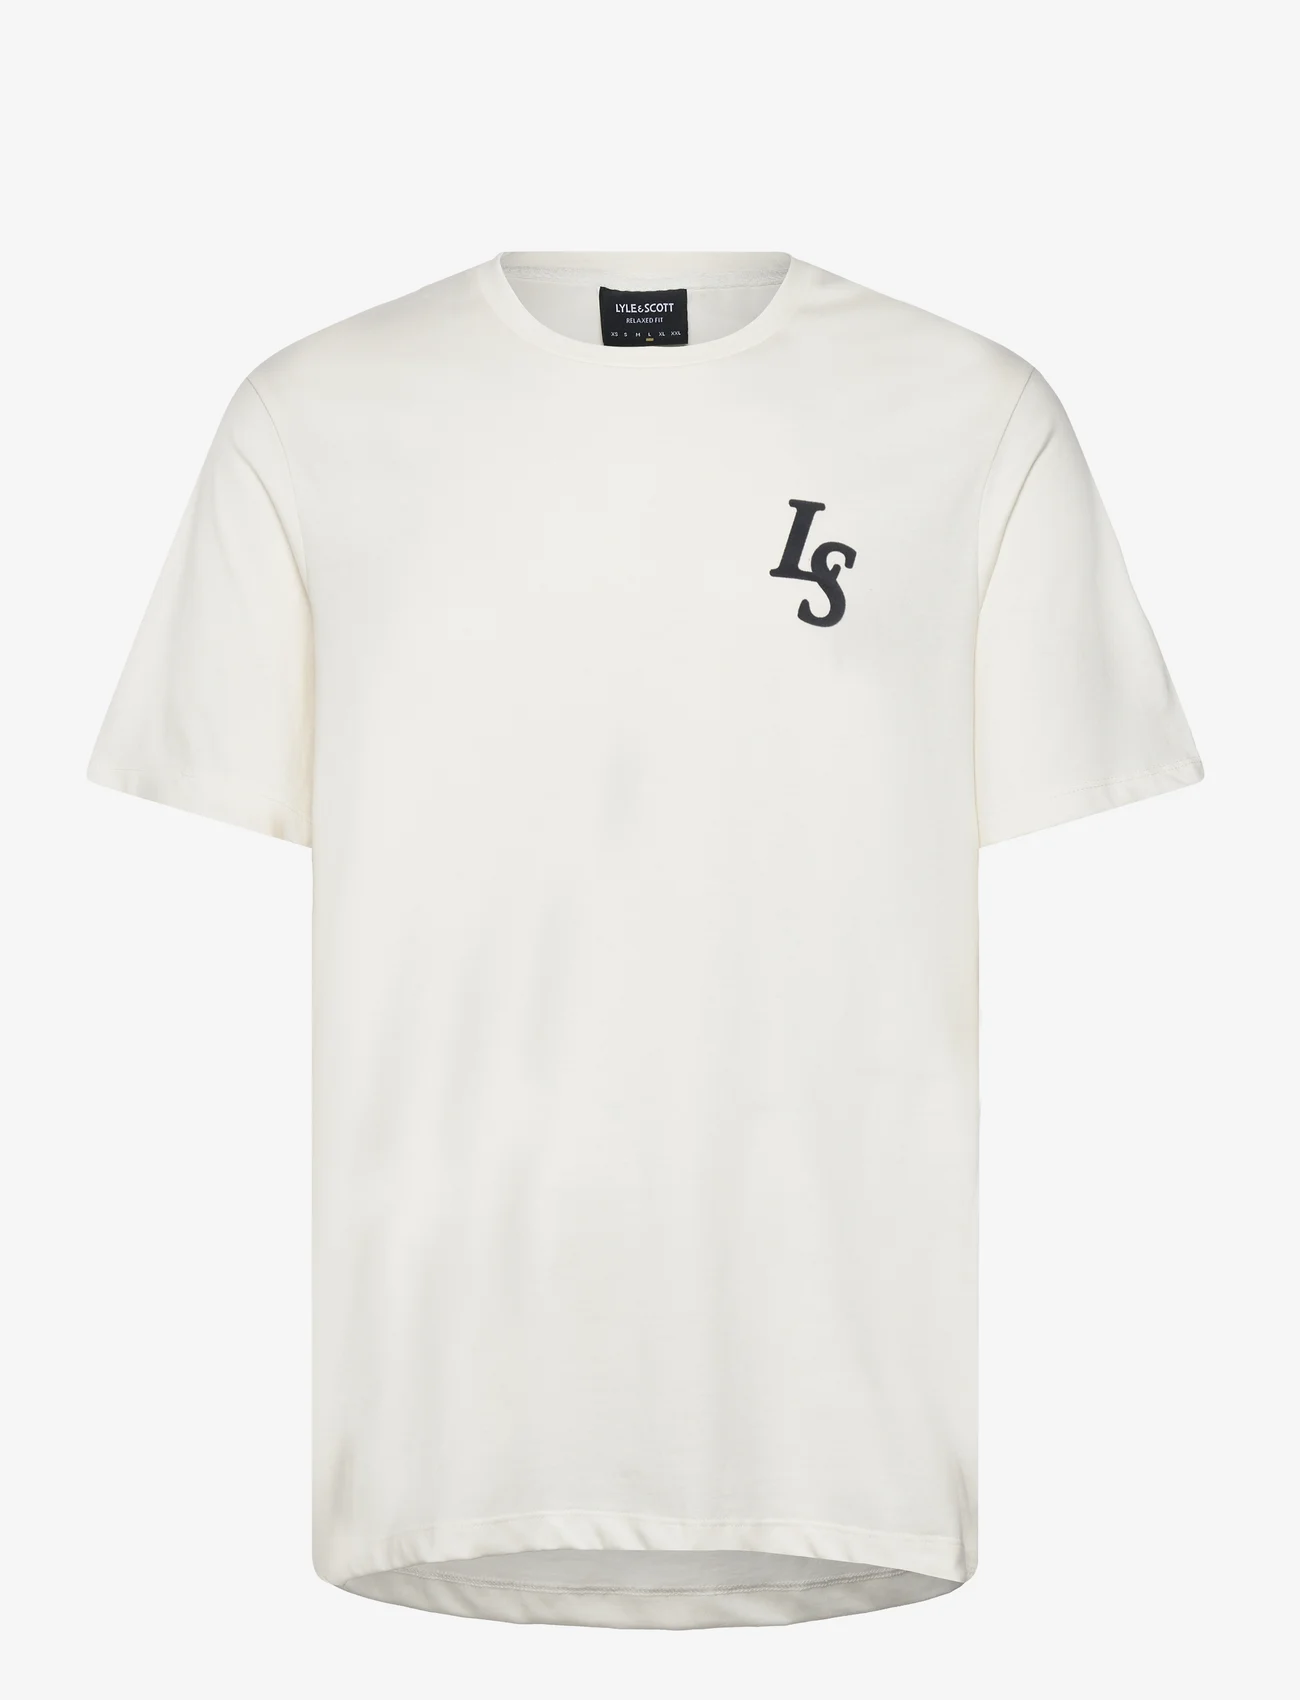 Lyle & Scott - Club Emblem T-Shirt - kortärmade t-shirts - x157 chalk - 0